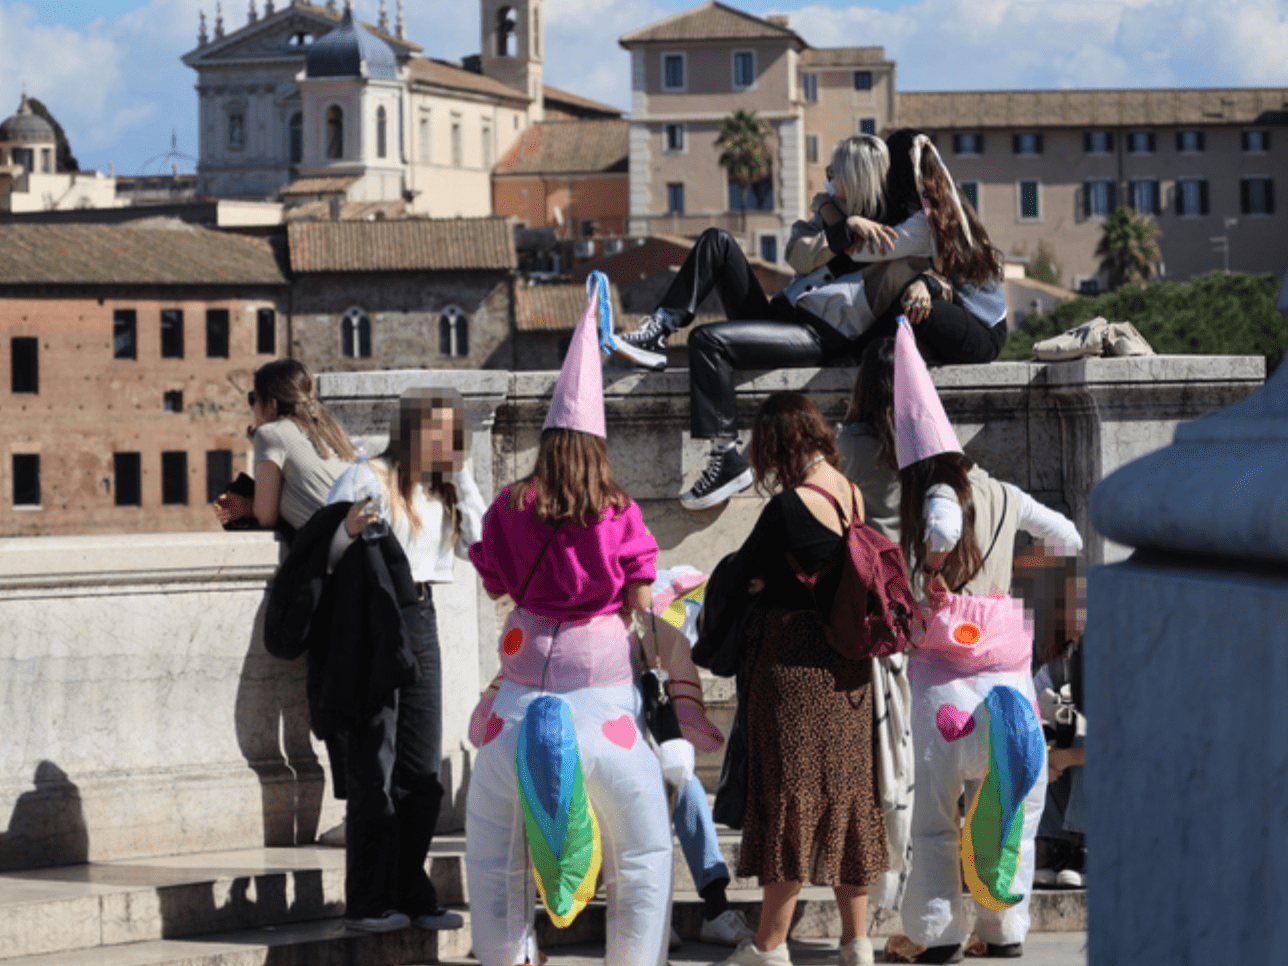 Vittoriano di Roma: turiste spagnole in maschera tra urla e schiamazzi. La festa senza rispetto lascia i passanti senza parole ➤ Buzzday.info